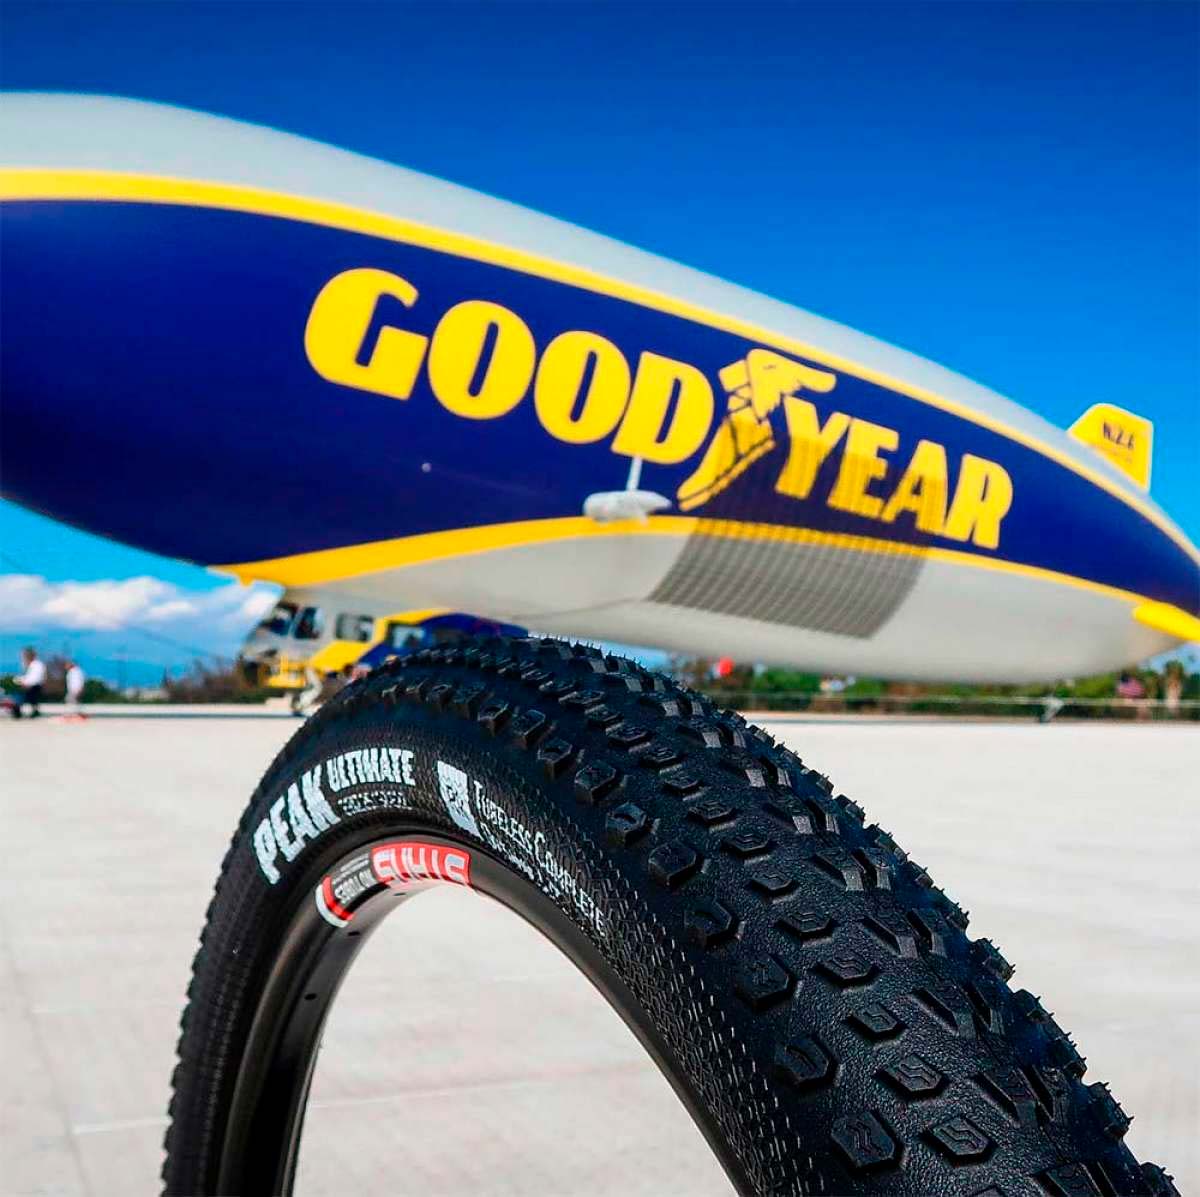 En TodoMountainBike: Los neumáticos Goodyear para bicis llegan a España, Portugal y Andorra de la mano de CDC Sport